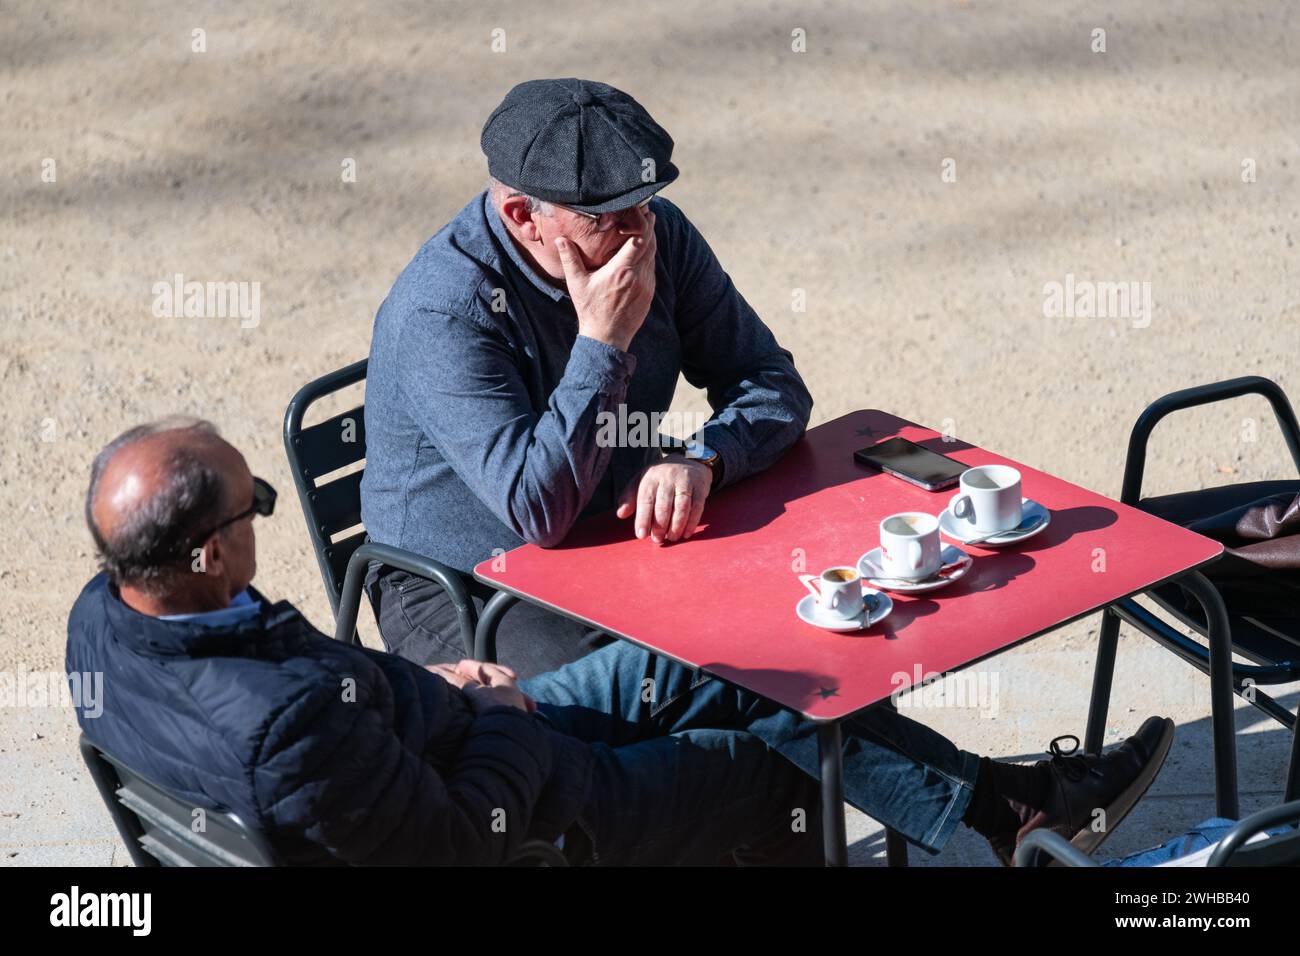 Aufnahme von Barcelonas Café-Szene, in der sich Freunde treffen, um Gespräche zu führen und das Leben zu besprechen. ©Paul Todd/OUTSIDEIMAGES Stockfoto